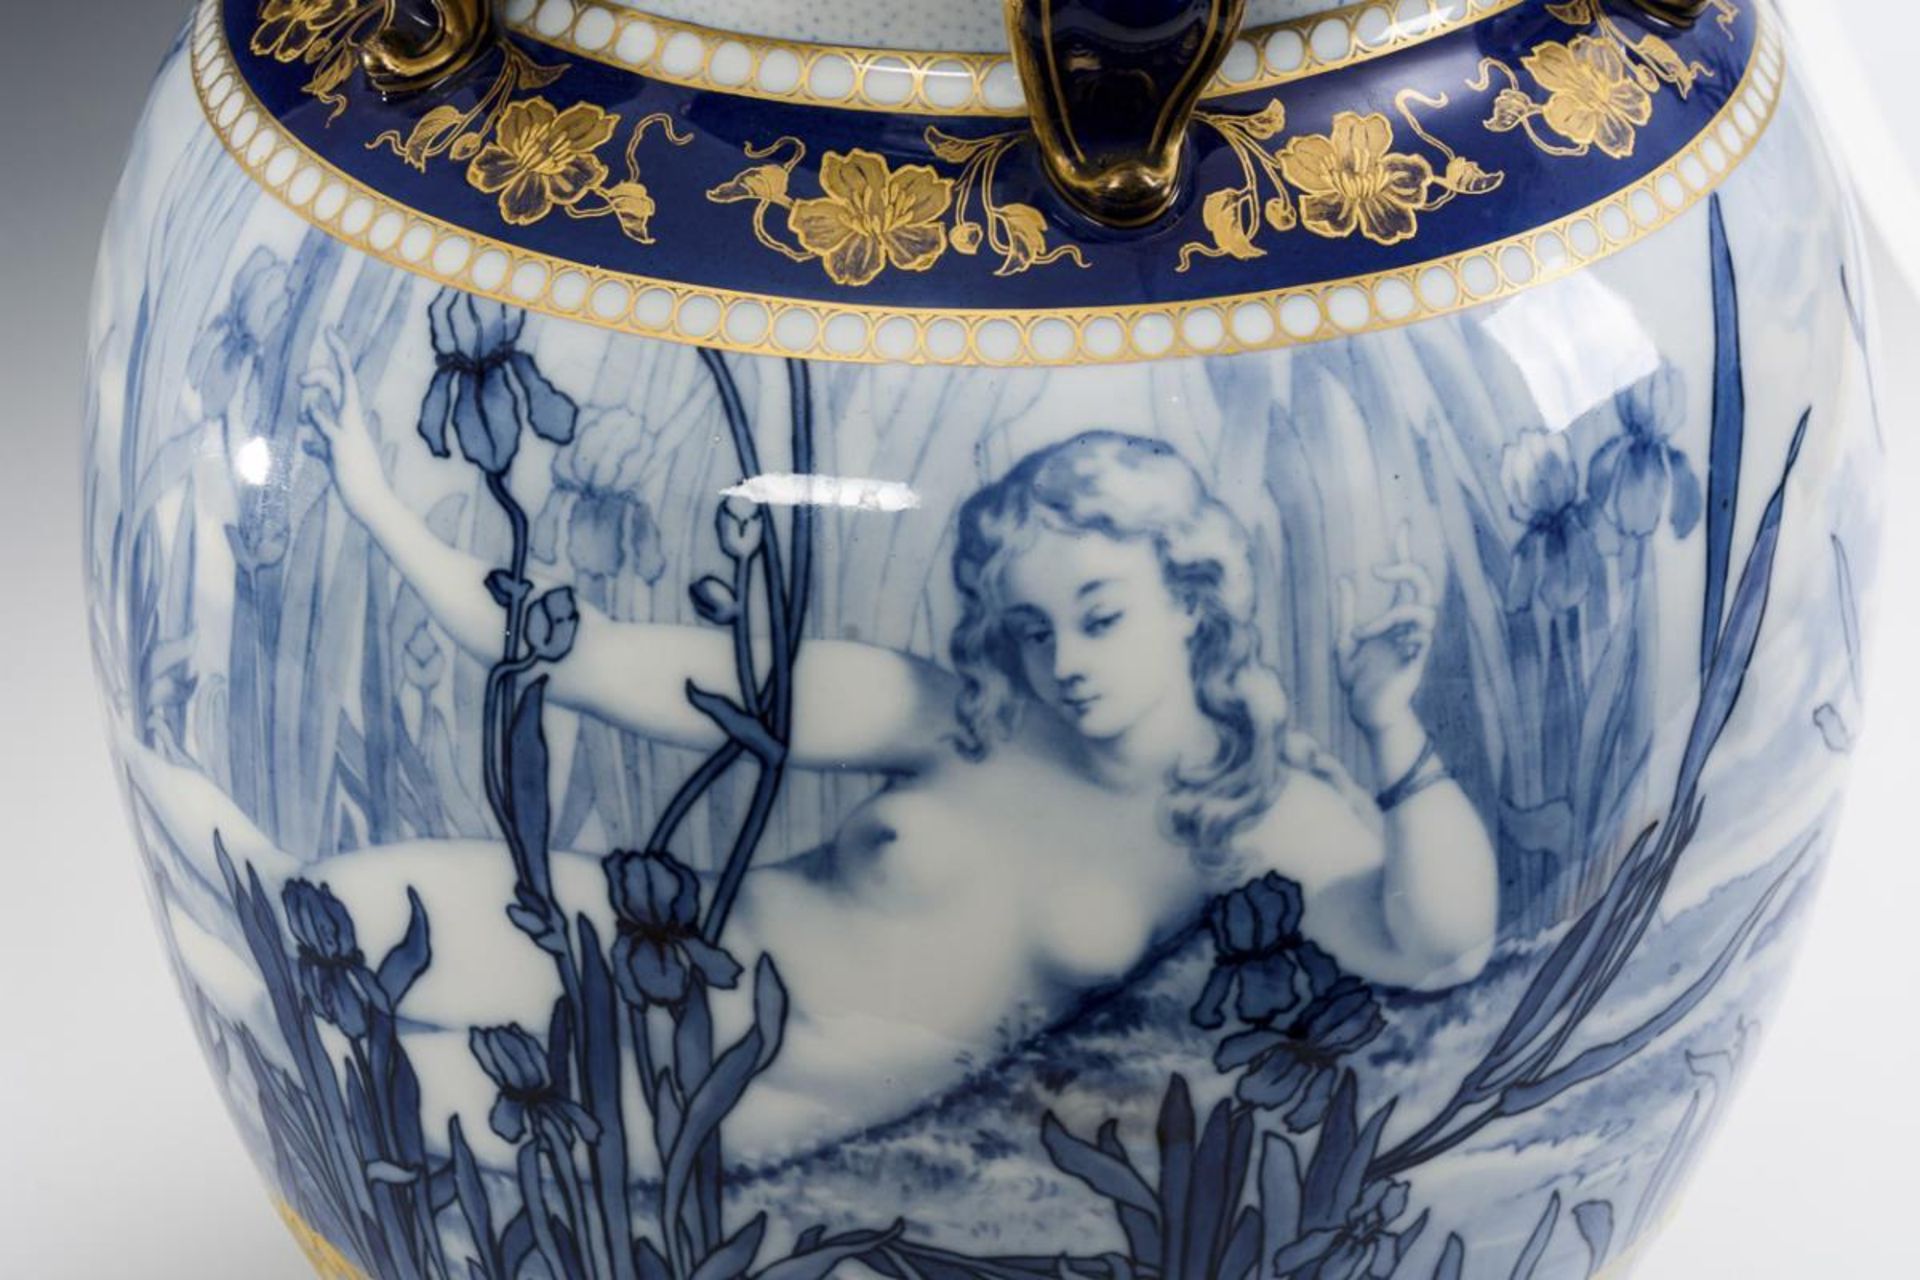 Seltene Jugendstil-Vase mit Blaumalerei. Pirkenhammer. - Image 7 of 8